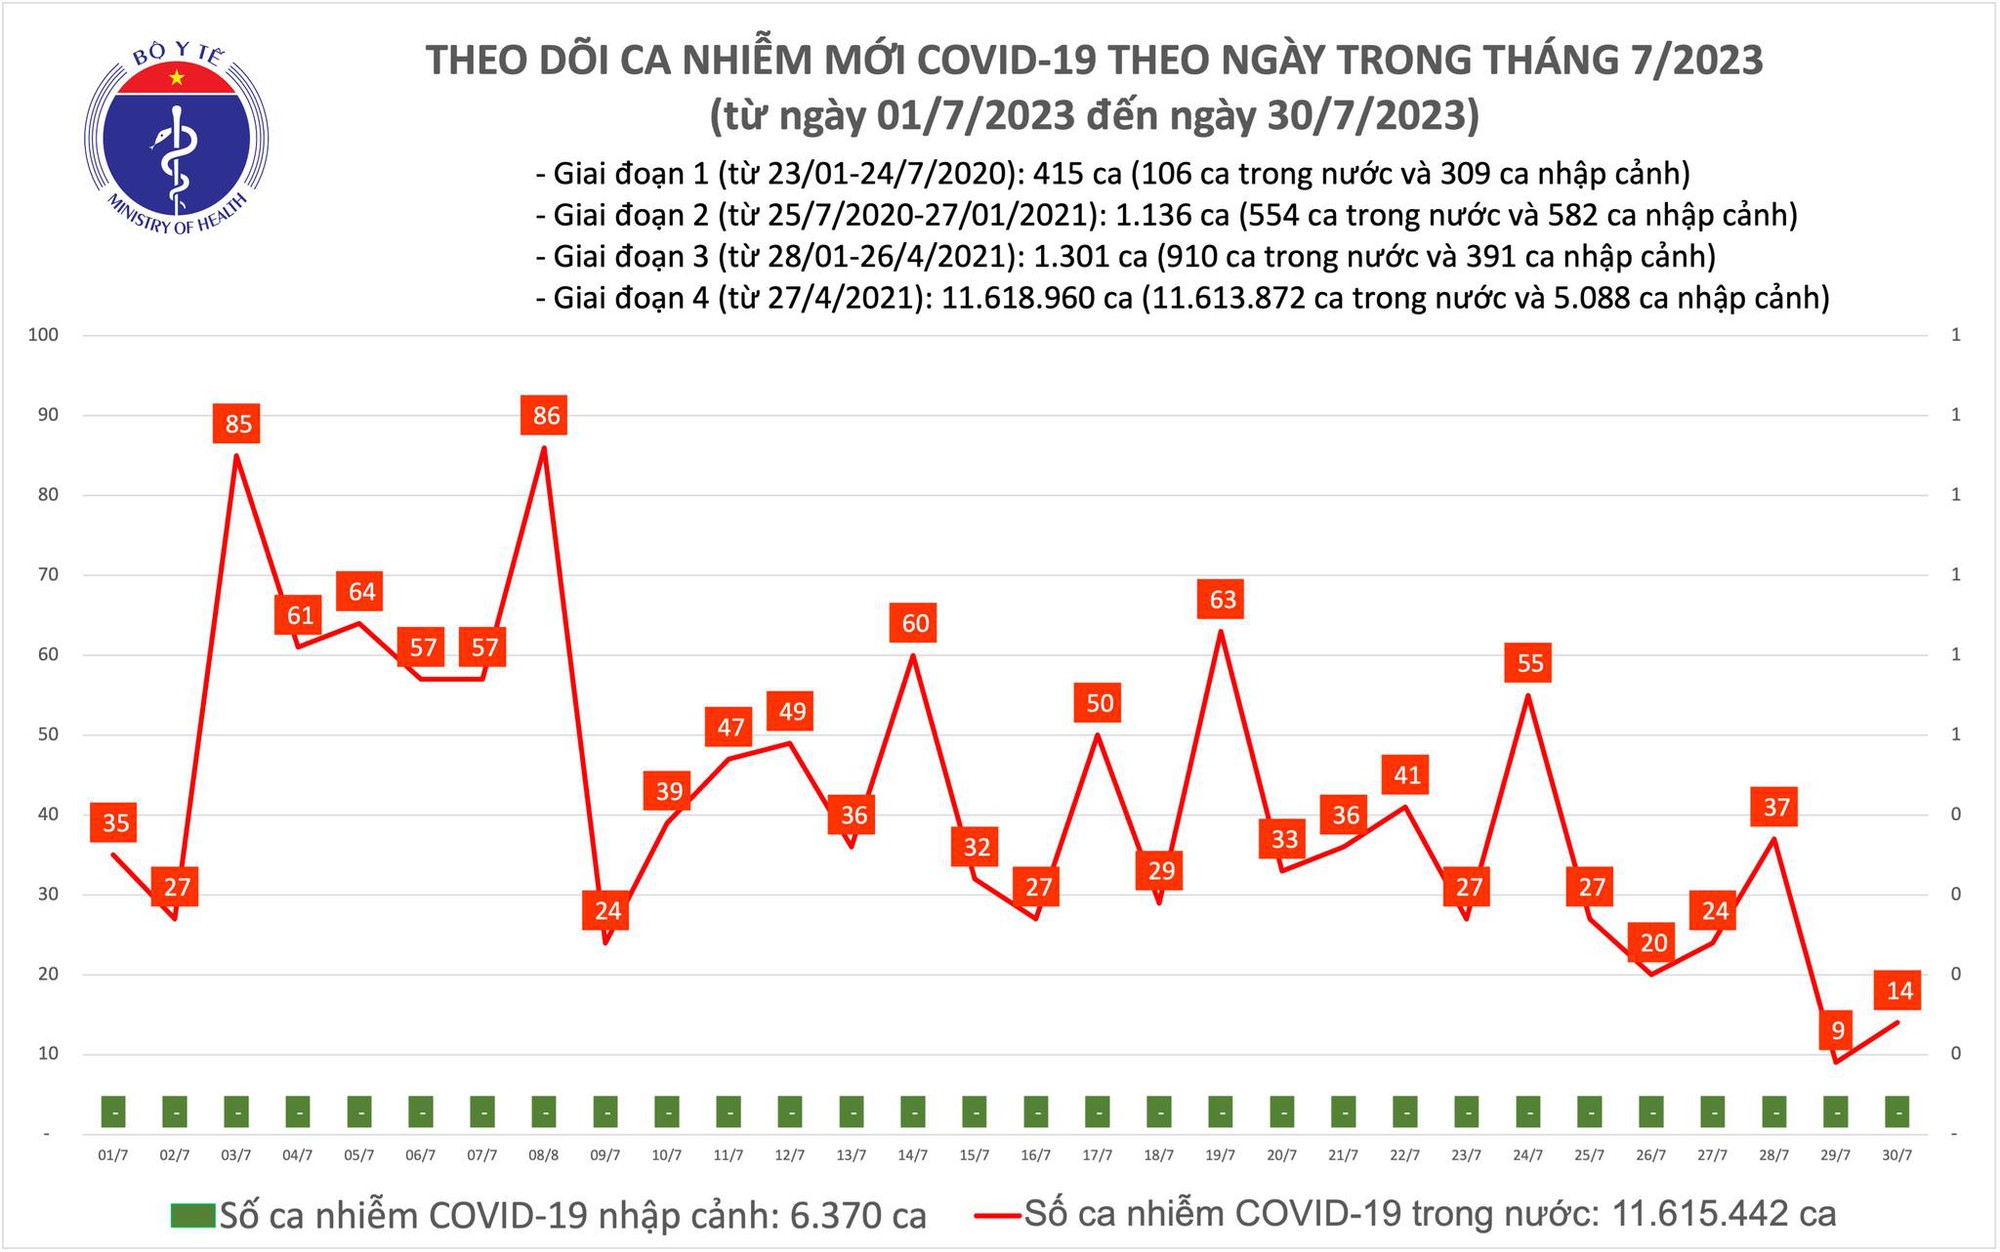 Ngày 30/7: Số mắc COVID-19 tăng nhẹ, lên 14 ca - Ảnh 1.